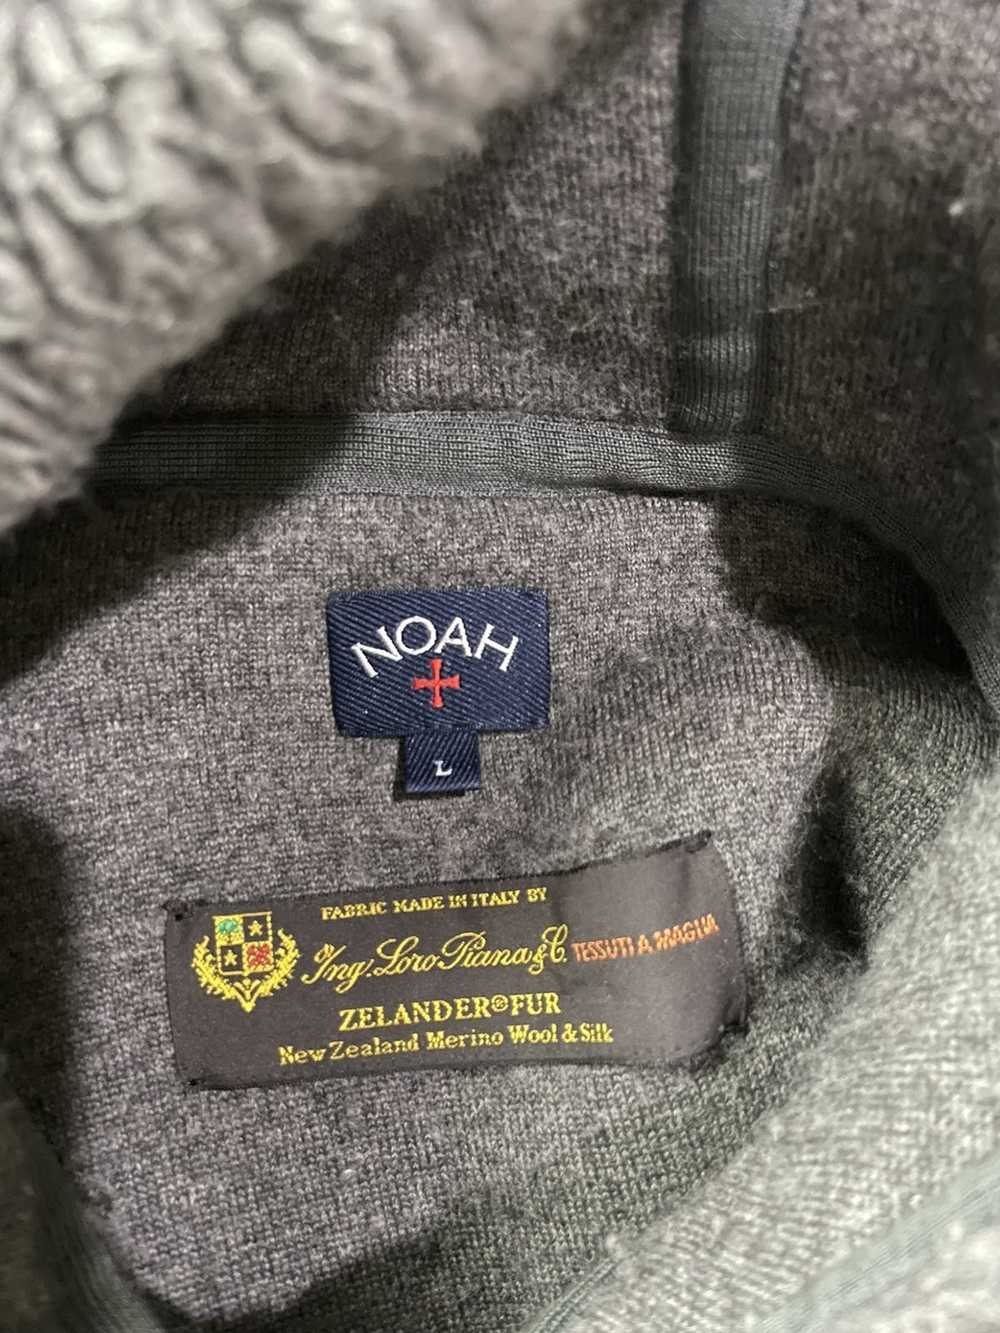 Noah Noah X Lolo piana wool silk hoodie - image 7